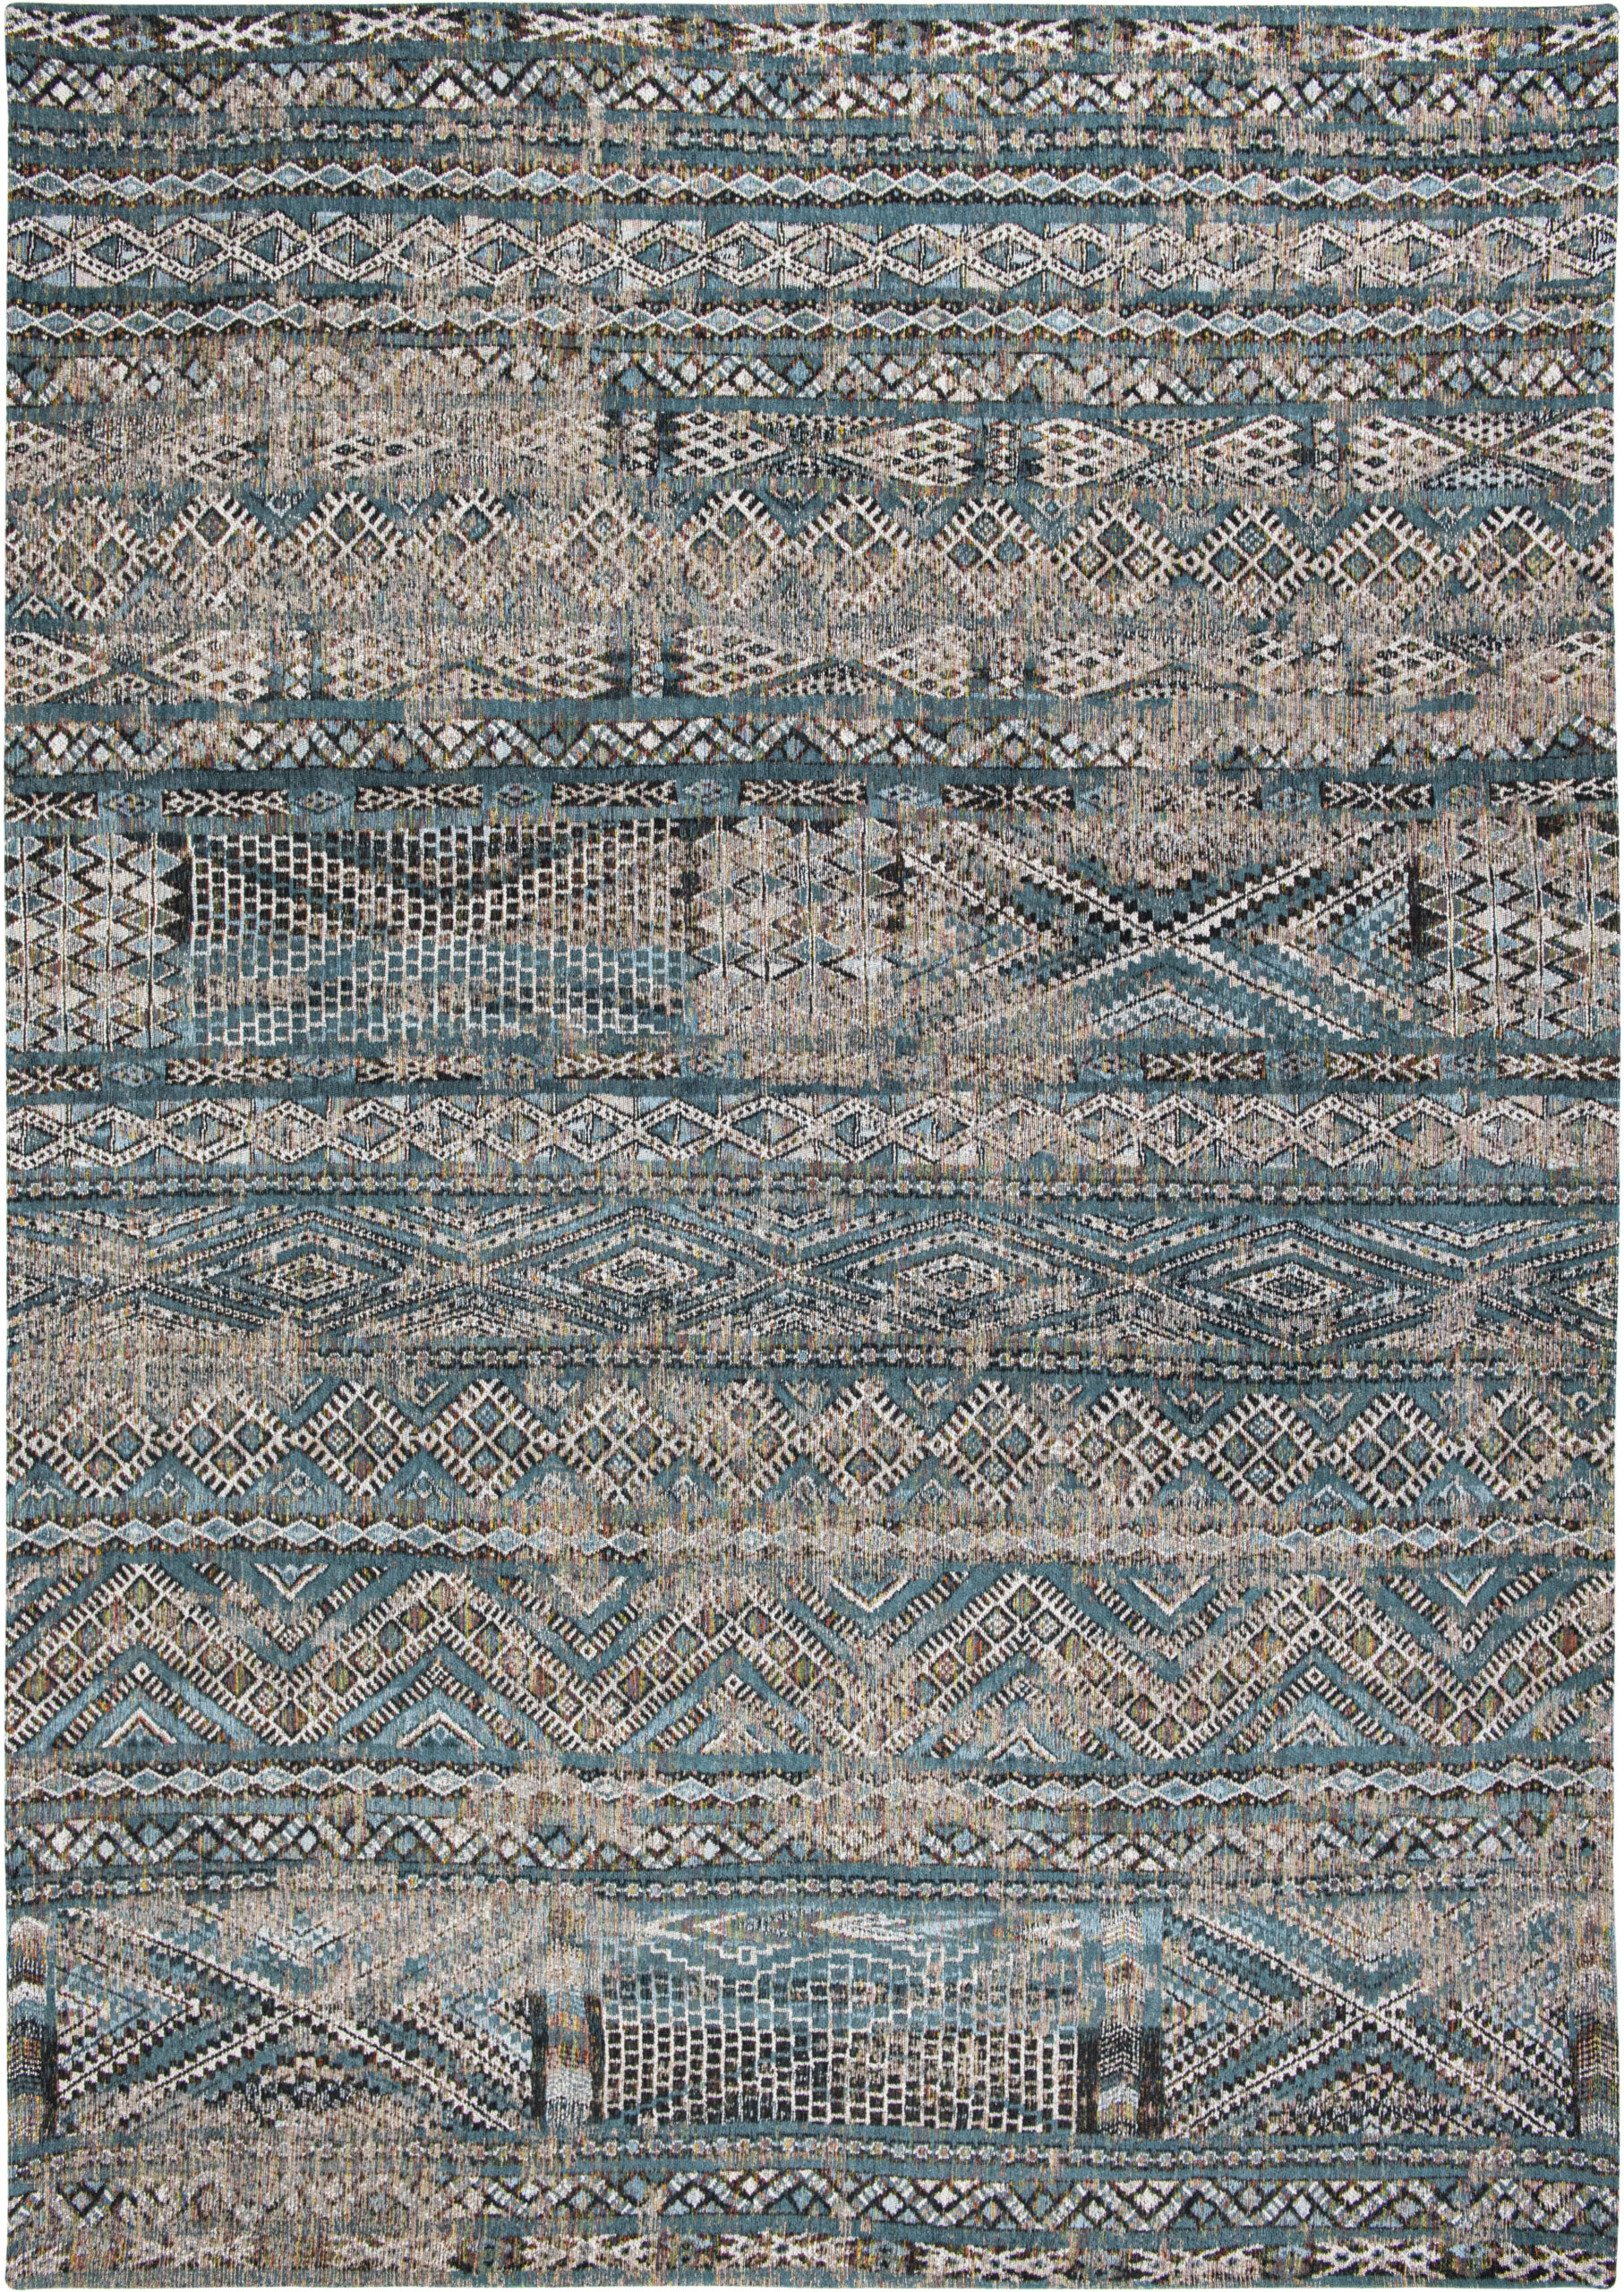 Wielokolorowy Kilimowy Dywan - ZEMMURI BLUE 9110 - Rozmiar: 140x200 cm